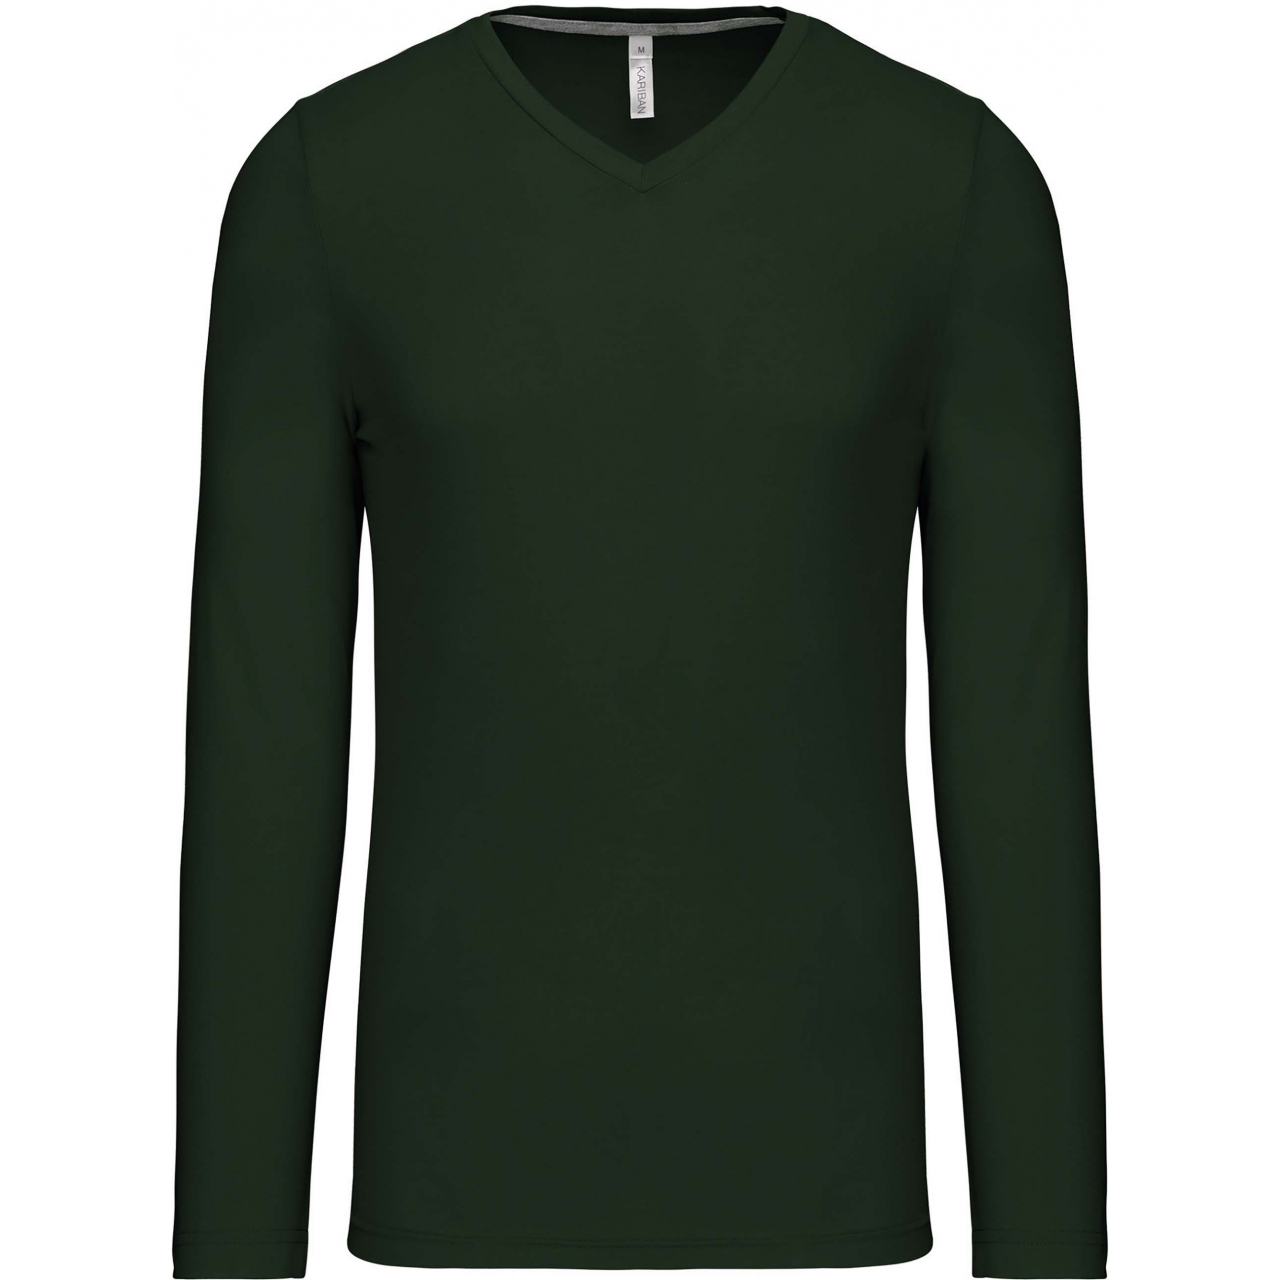 Pánské tričko Kariban dlouhý rukáv V-neck - tmavě zelené, XL